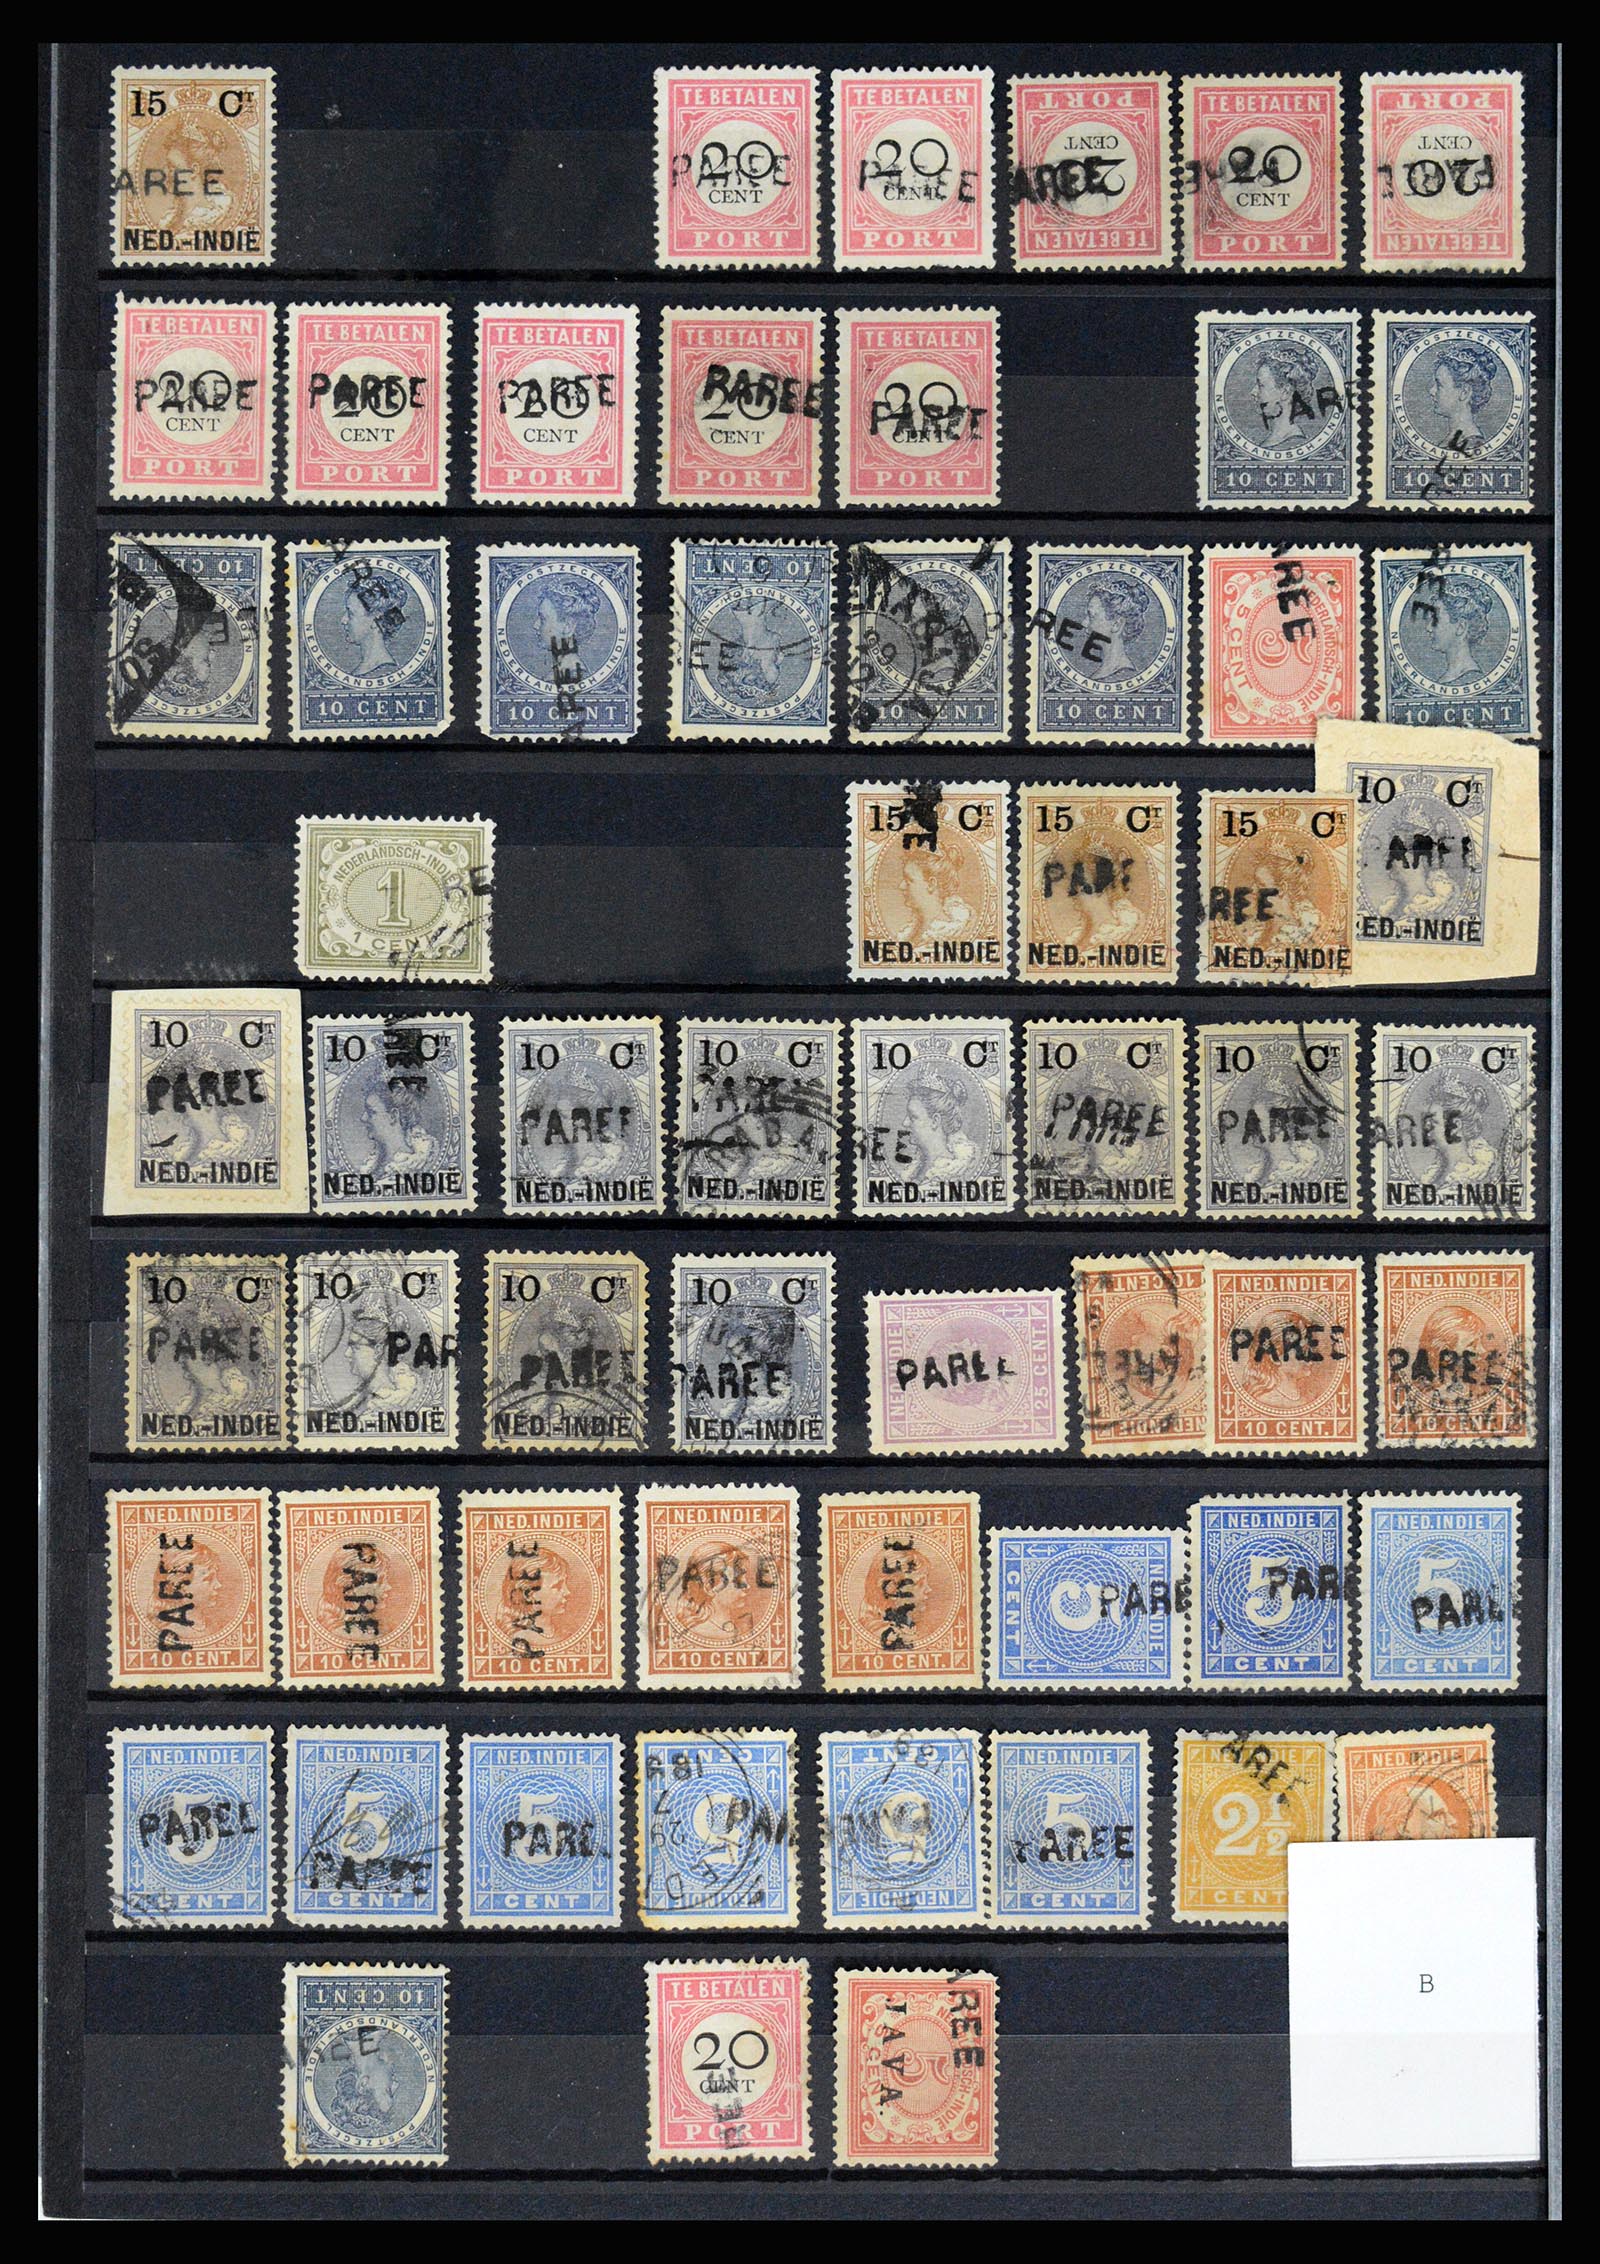 36512 052 - Stamp collection 36512 Nederlands Indië stempels 1872-1930.